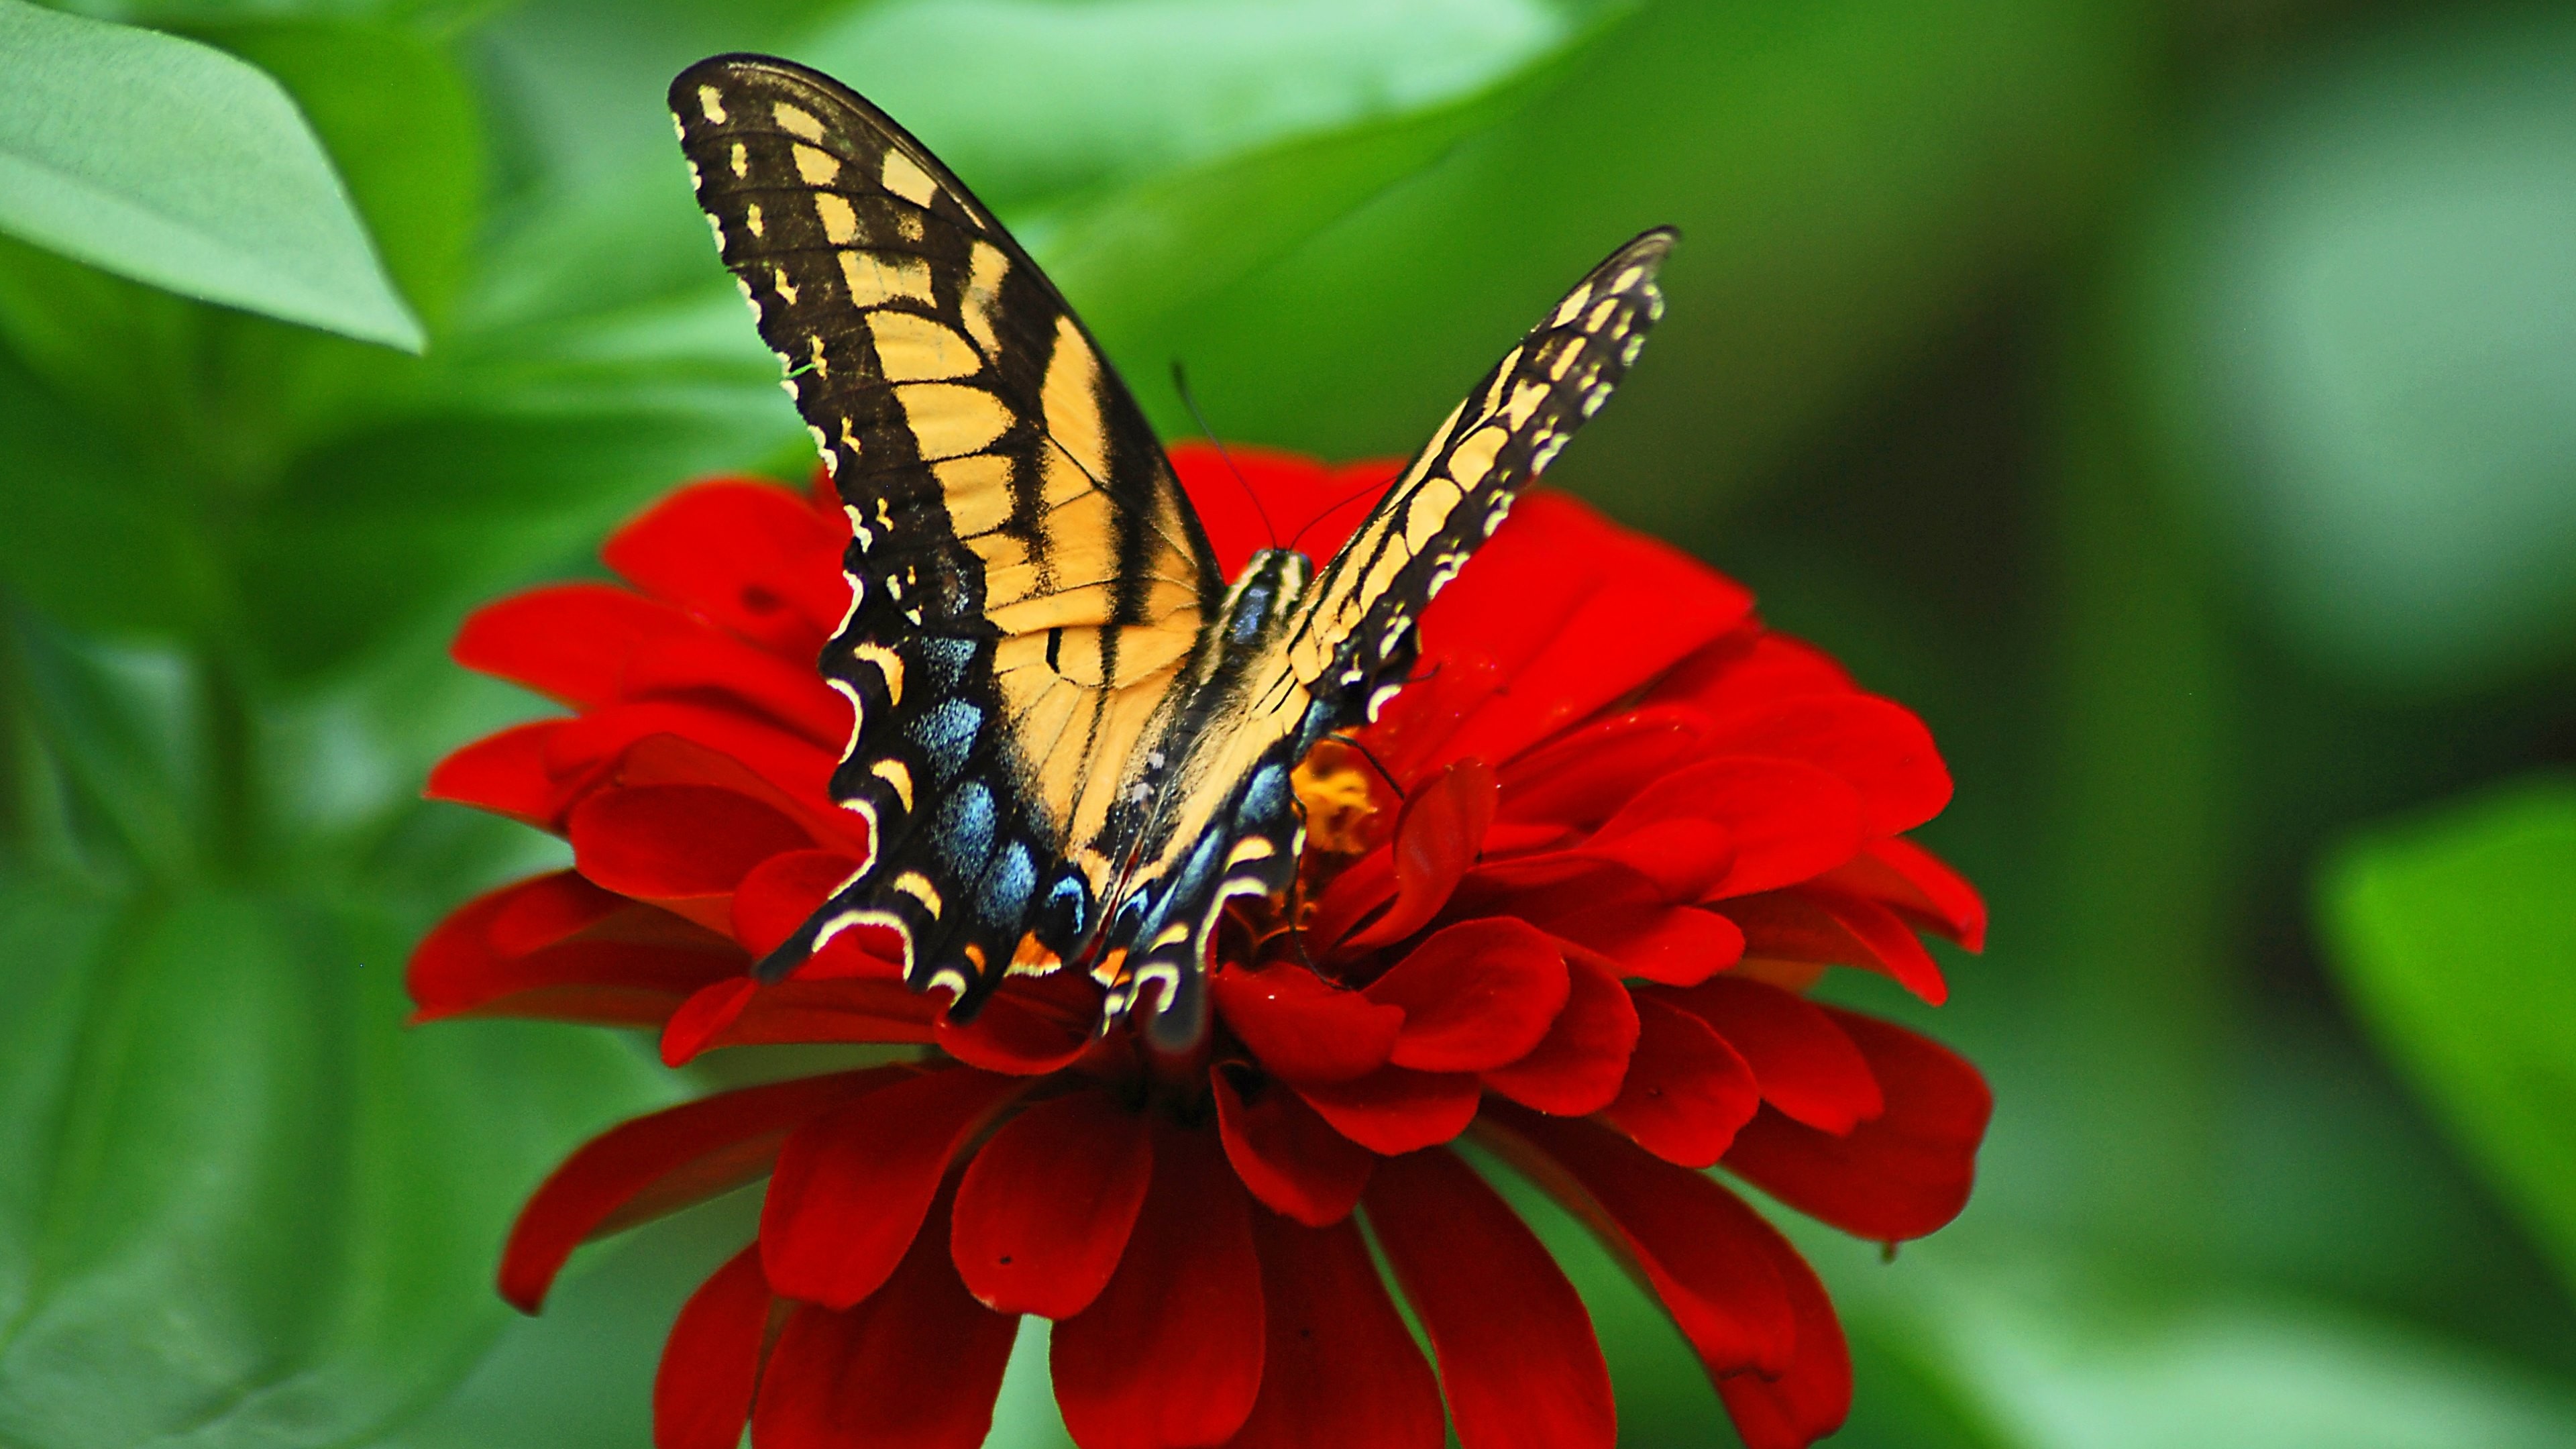 3840x2160 Wallpaper: Butterfly on the Red Flower. Ultra HD 4K 